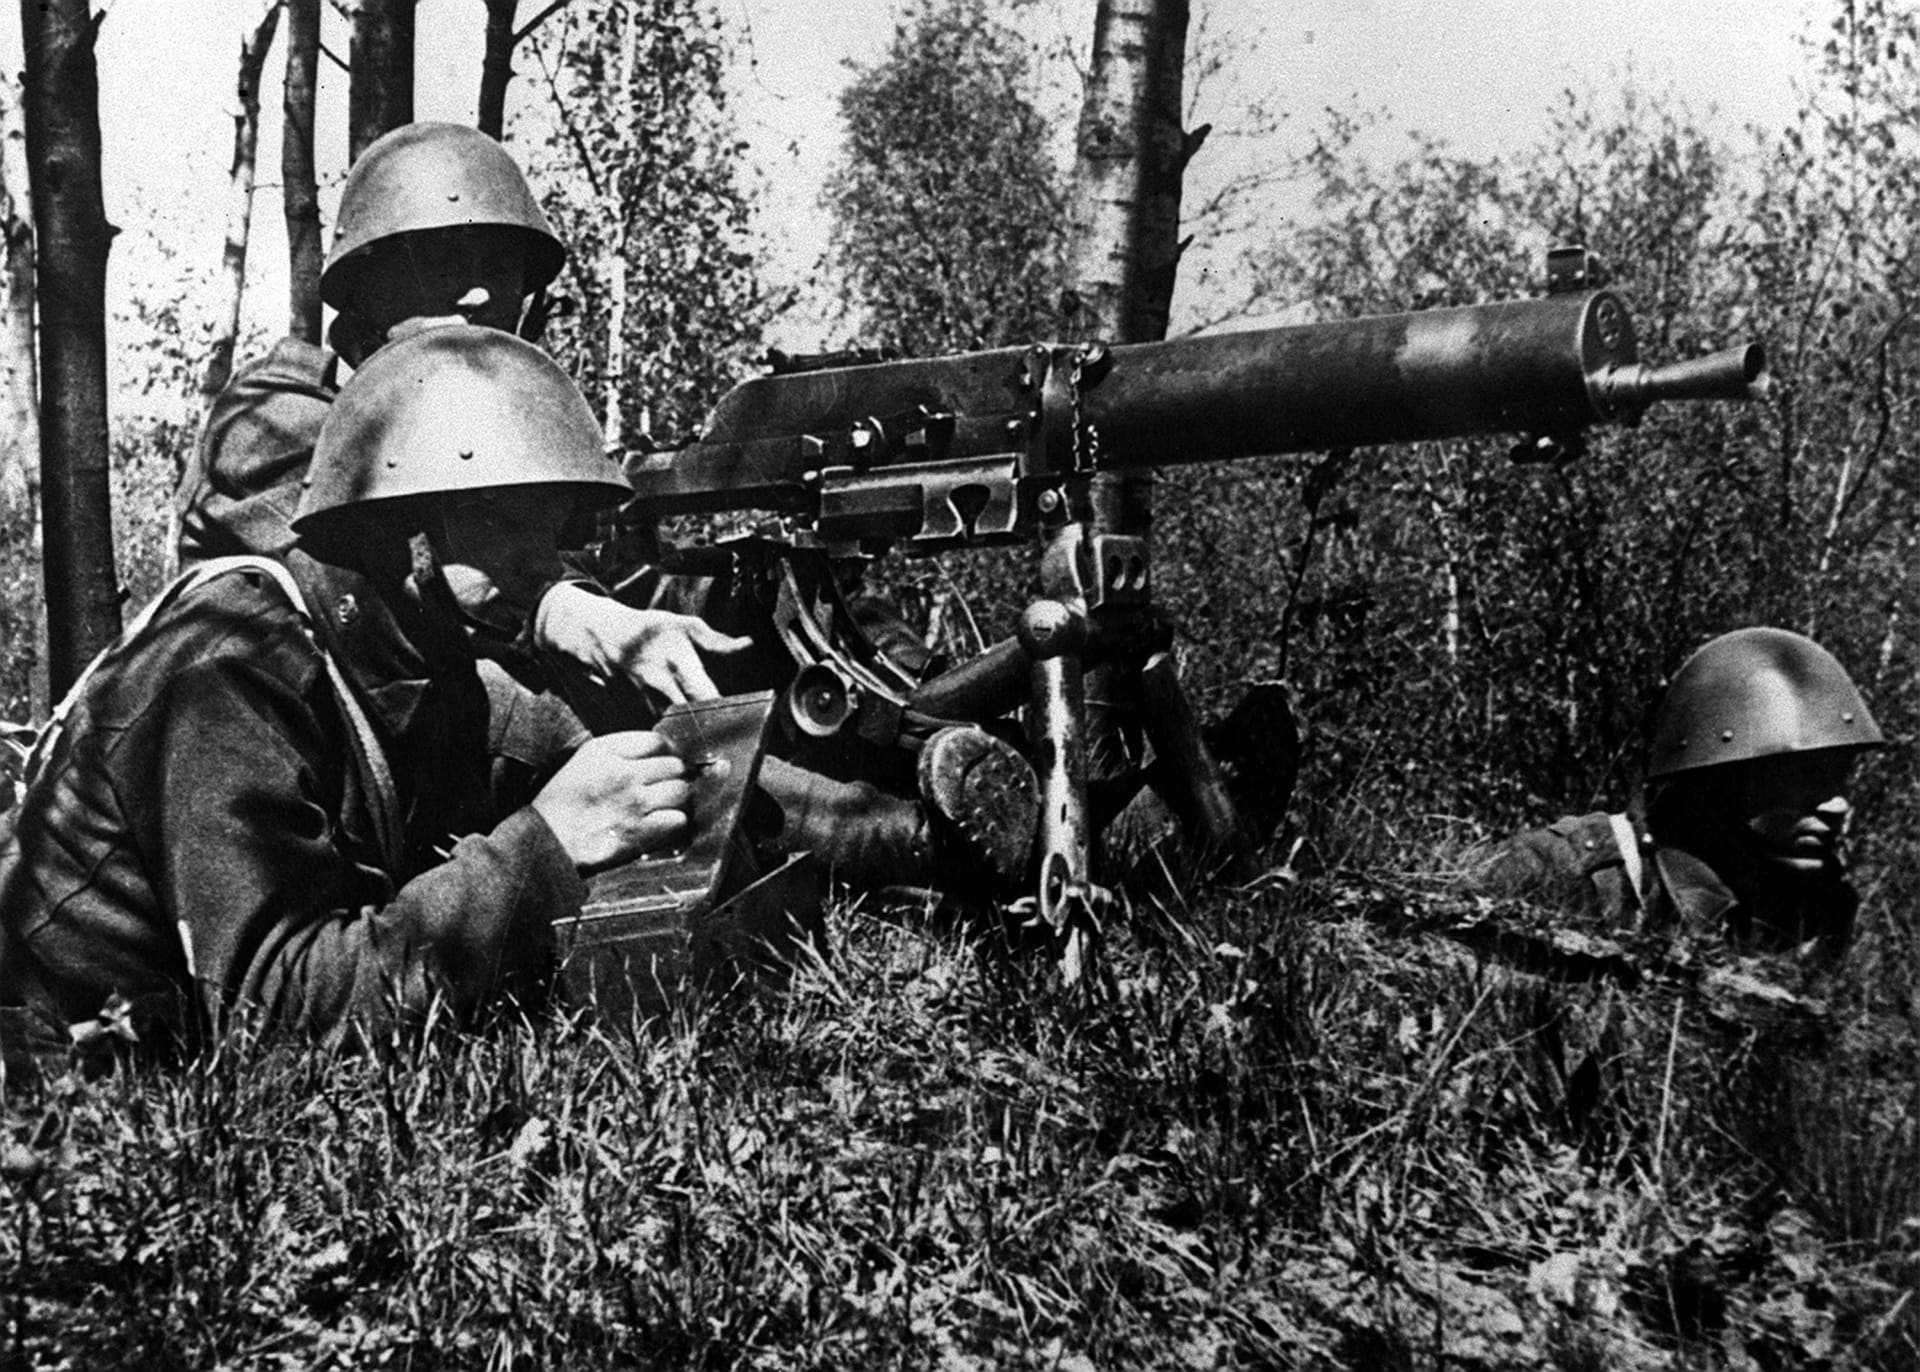 Čechoslováci byli připraveni se bránit, pokud by Němci zaútočili. Proti politické dohodě ale byli bezbranní.